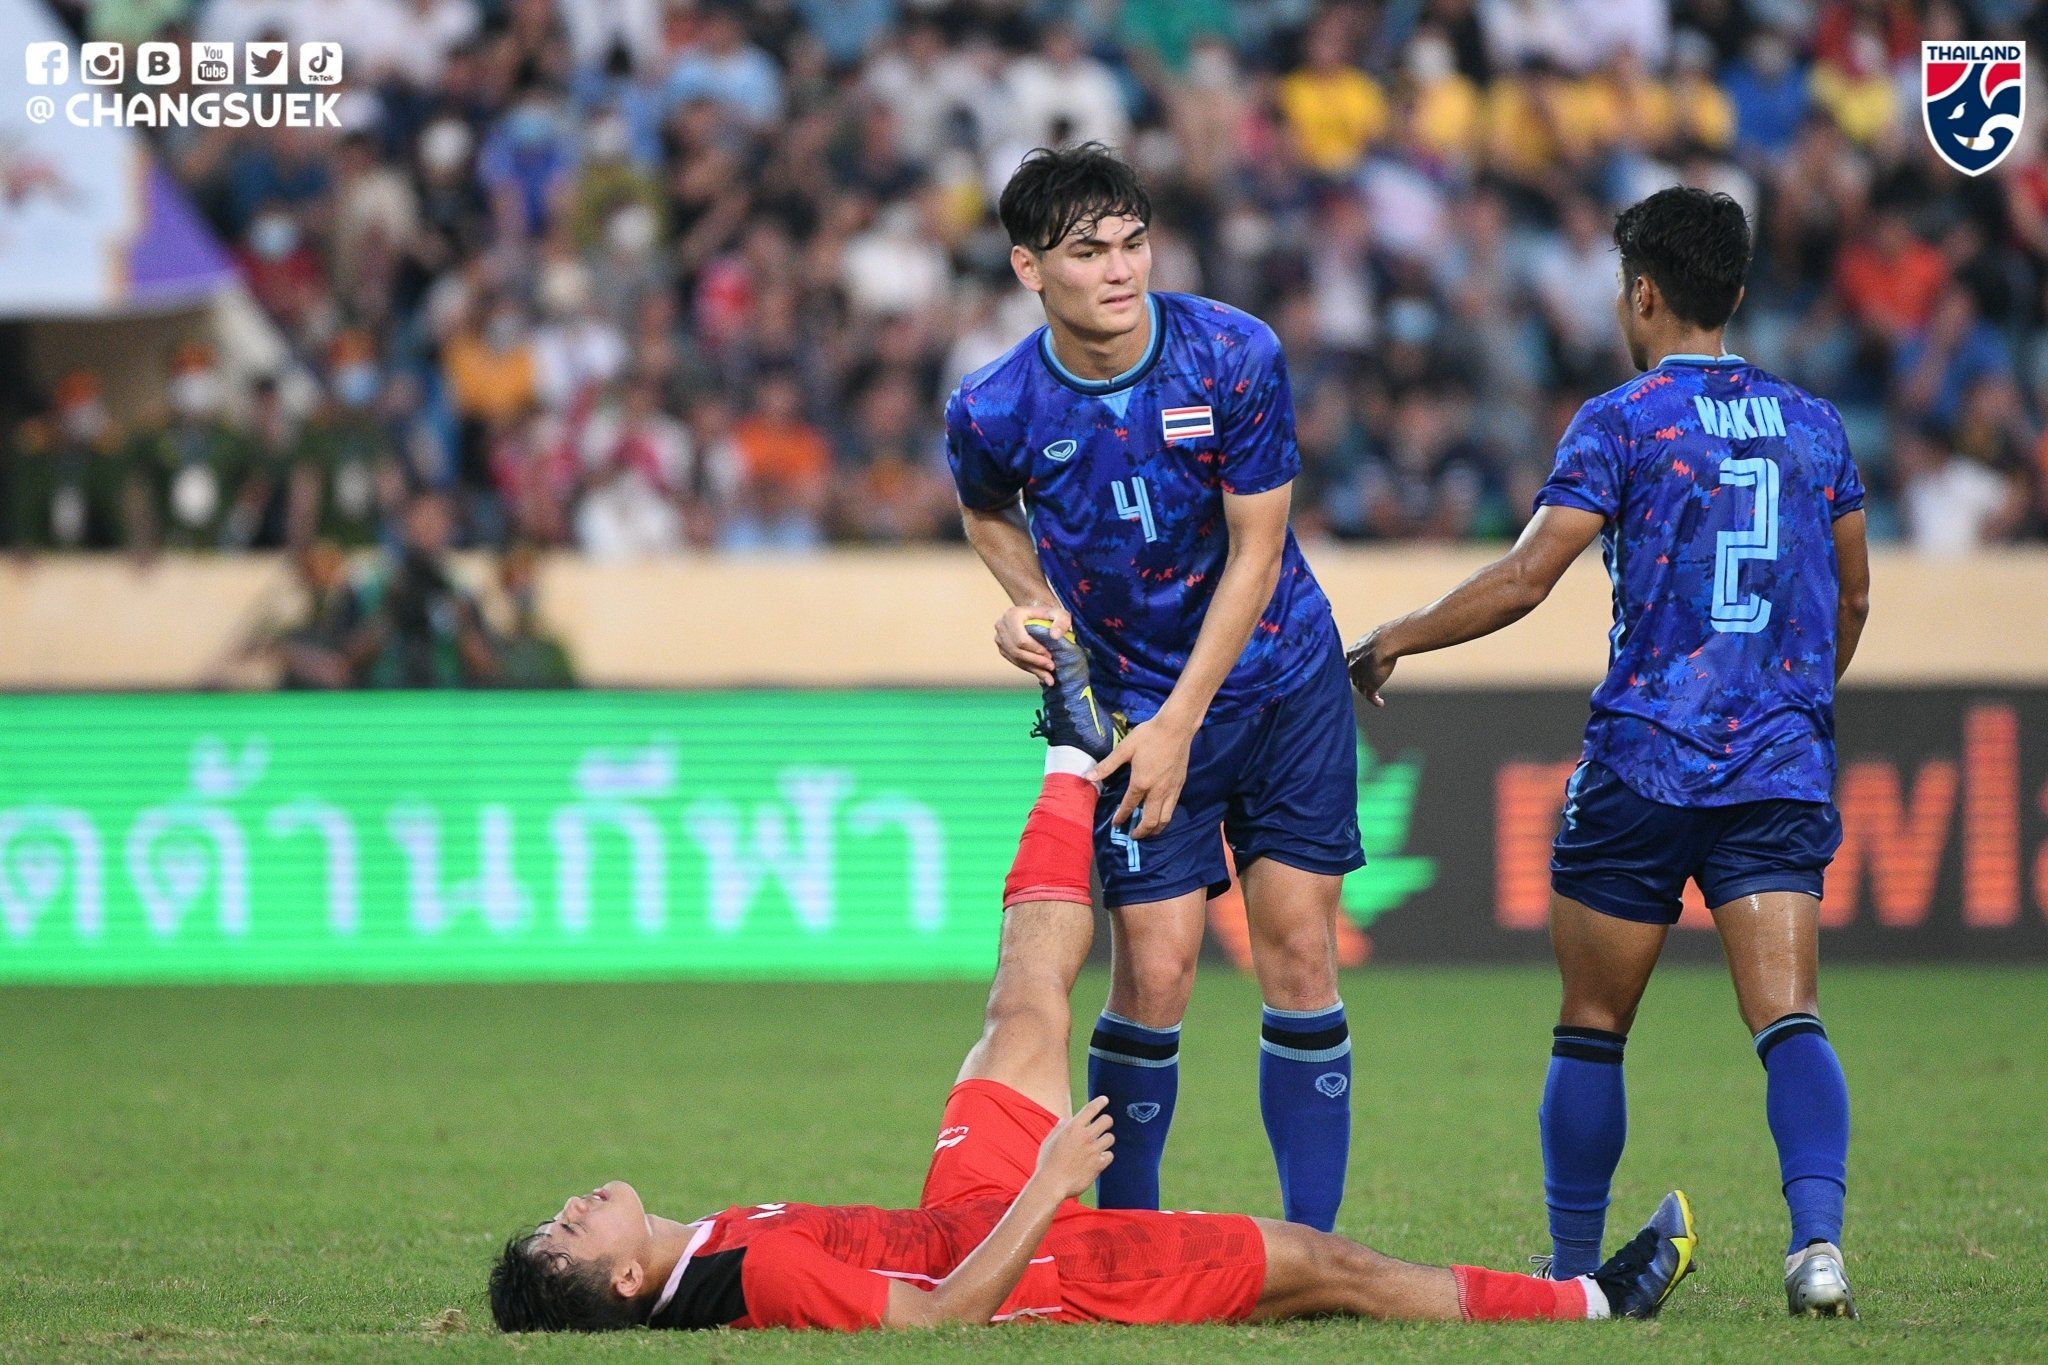 Pemain timnas U-23 Thailand, Jonathan Khemdee, saat membantu pemain Indonesia, Alfeandra Dewangga, yang mengalami kram di semifinal SEA Games 2021.